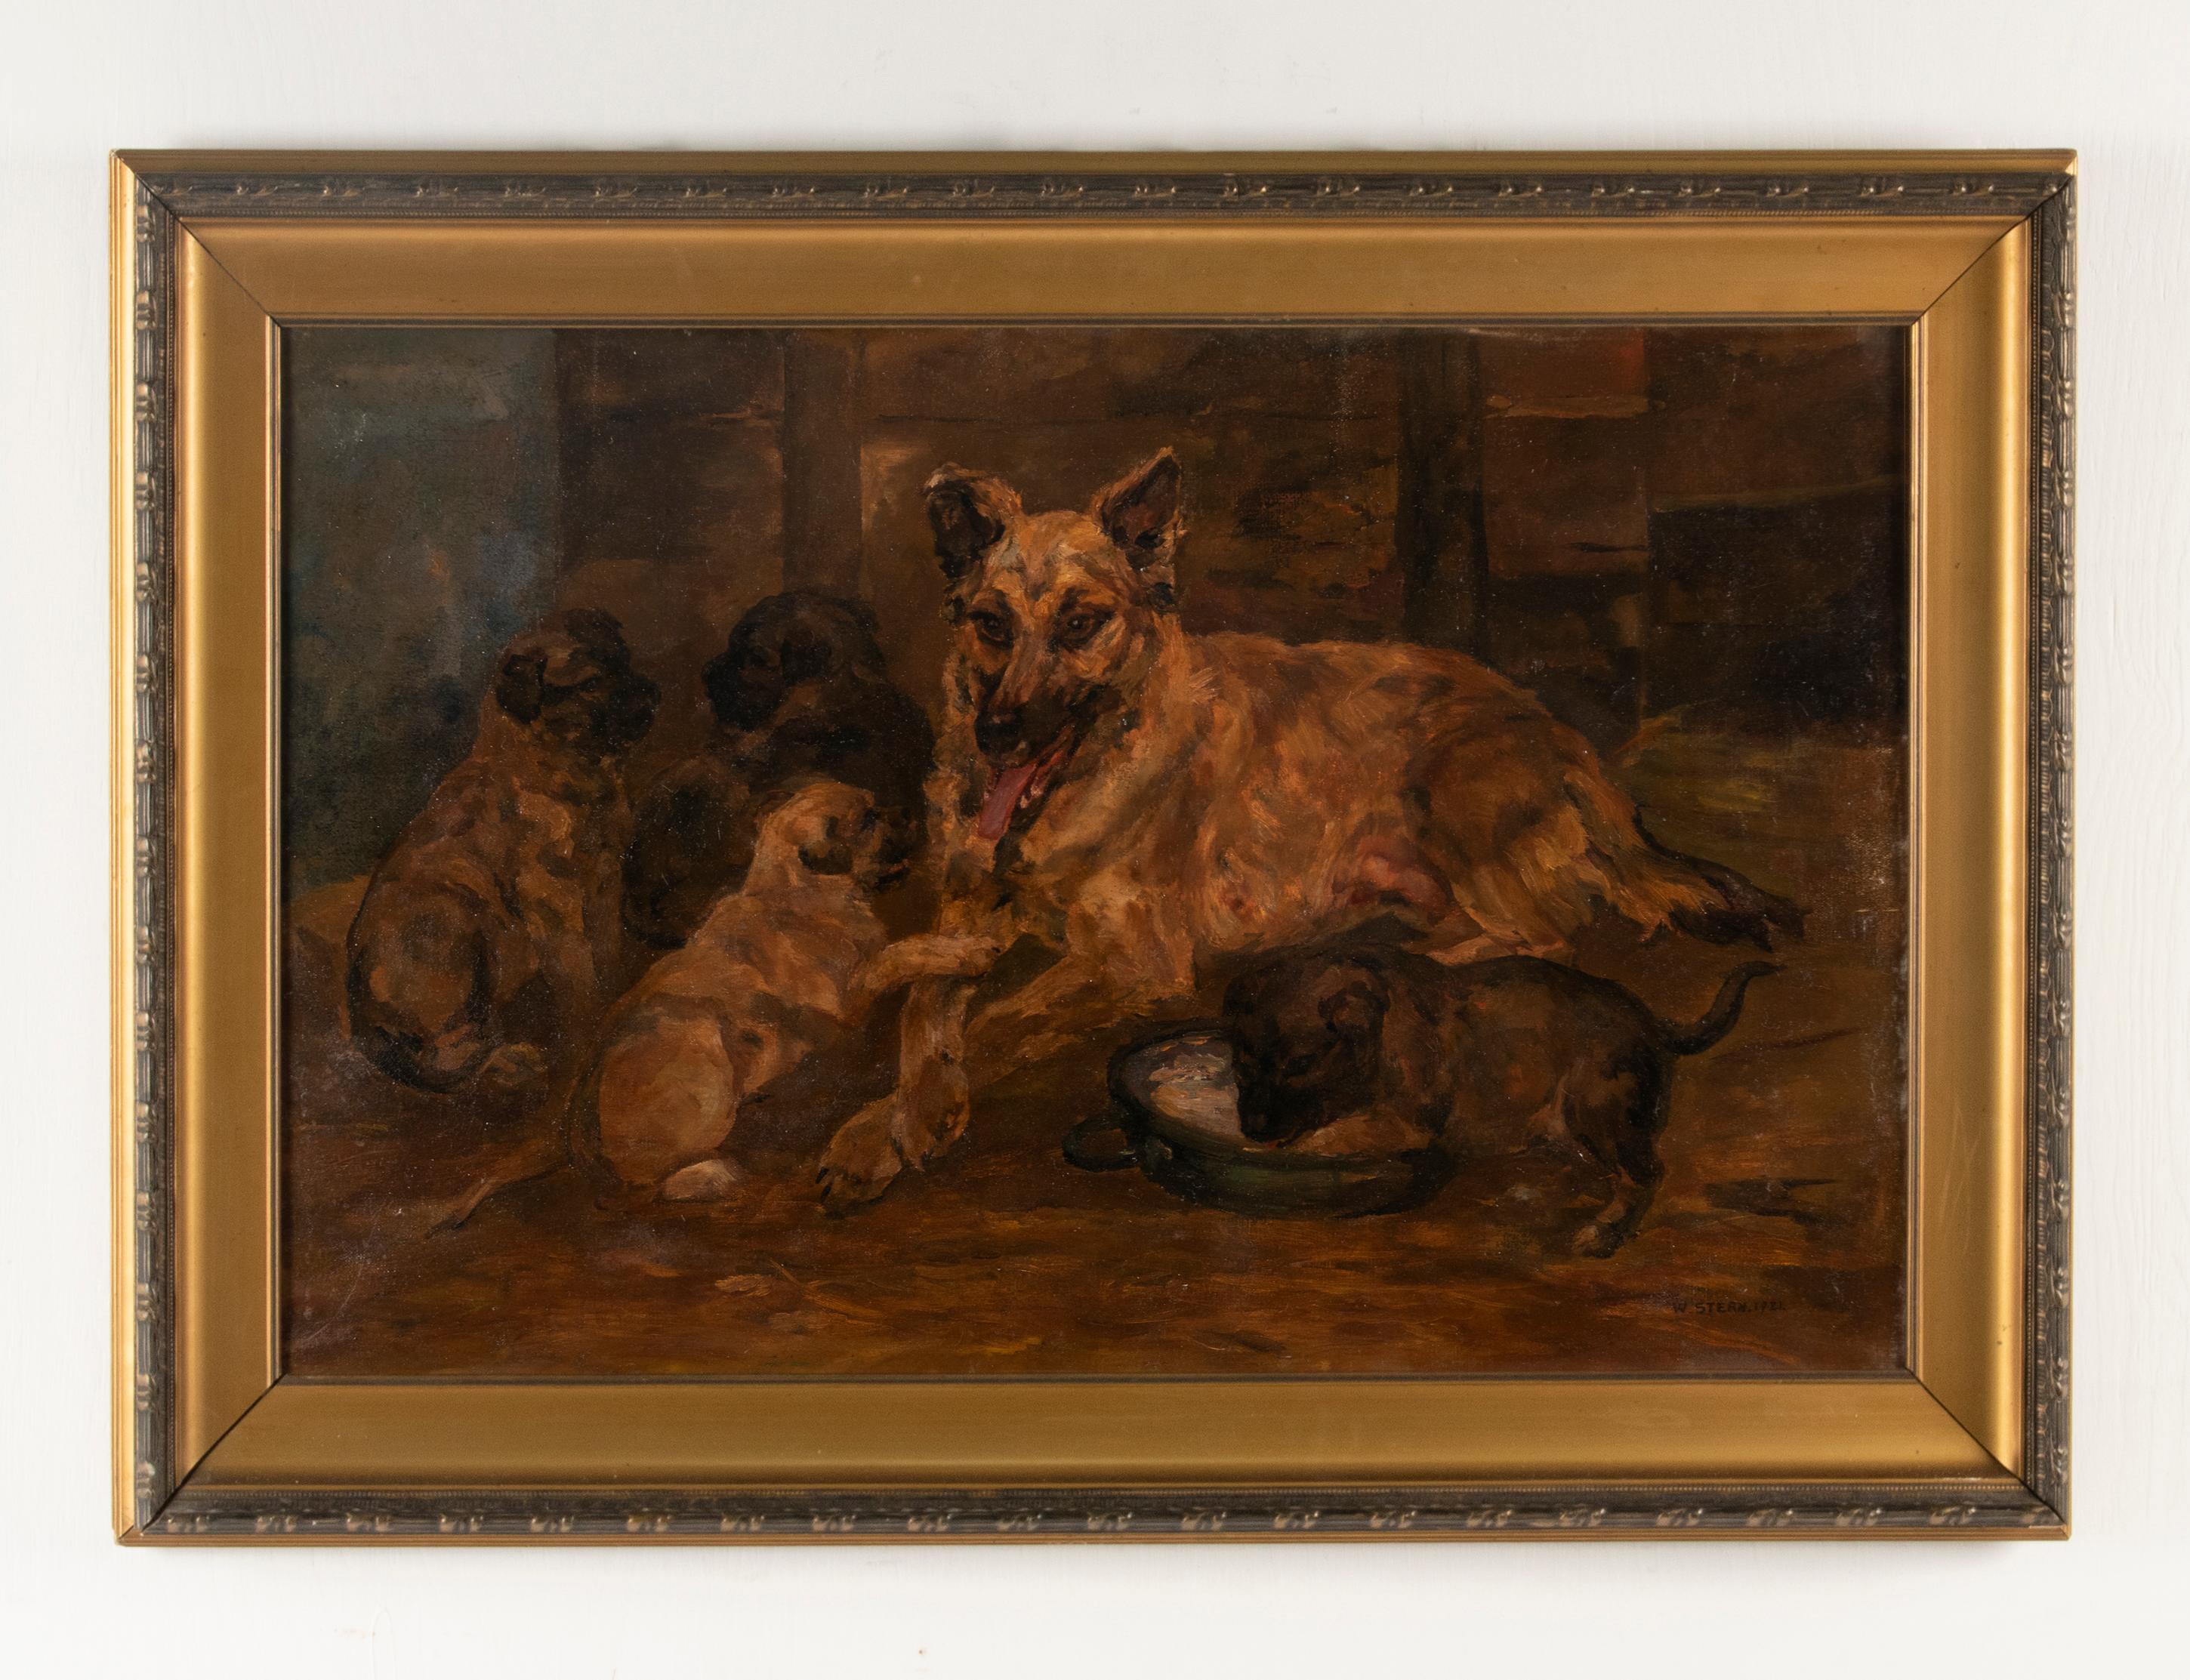 Schönes antikes Gemälde, das einen Malinois (Belgischer Schäferhund) mit seinen Welpen darstellt.
Das Gemälde ist sehr stimmungsvoll, mit schönen Hell-Dunkel-Kontrasten.
Das Gemälde ist in einem schönen vergoldeten Rahmen aus der damaligen Zeit